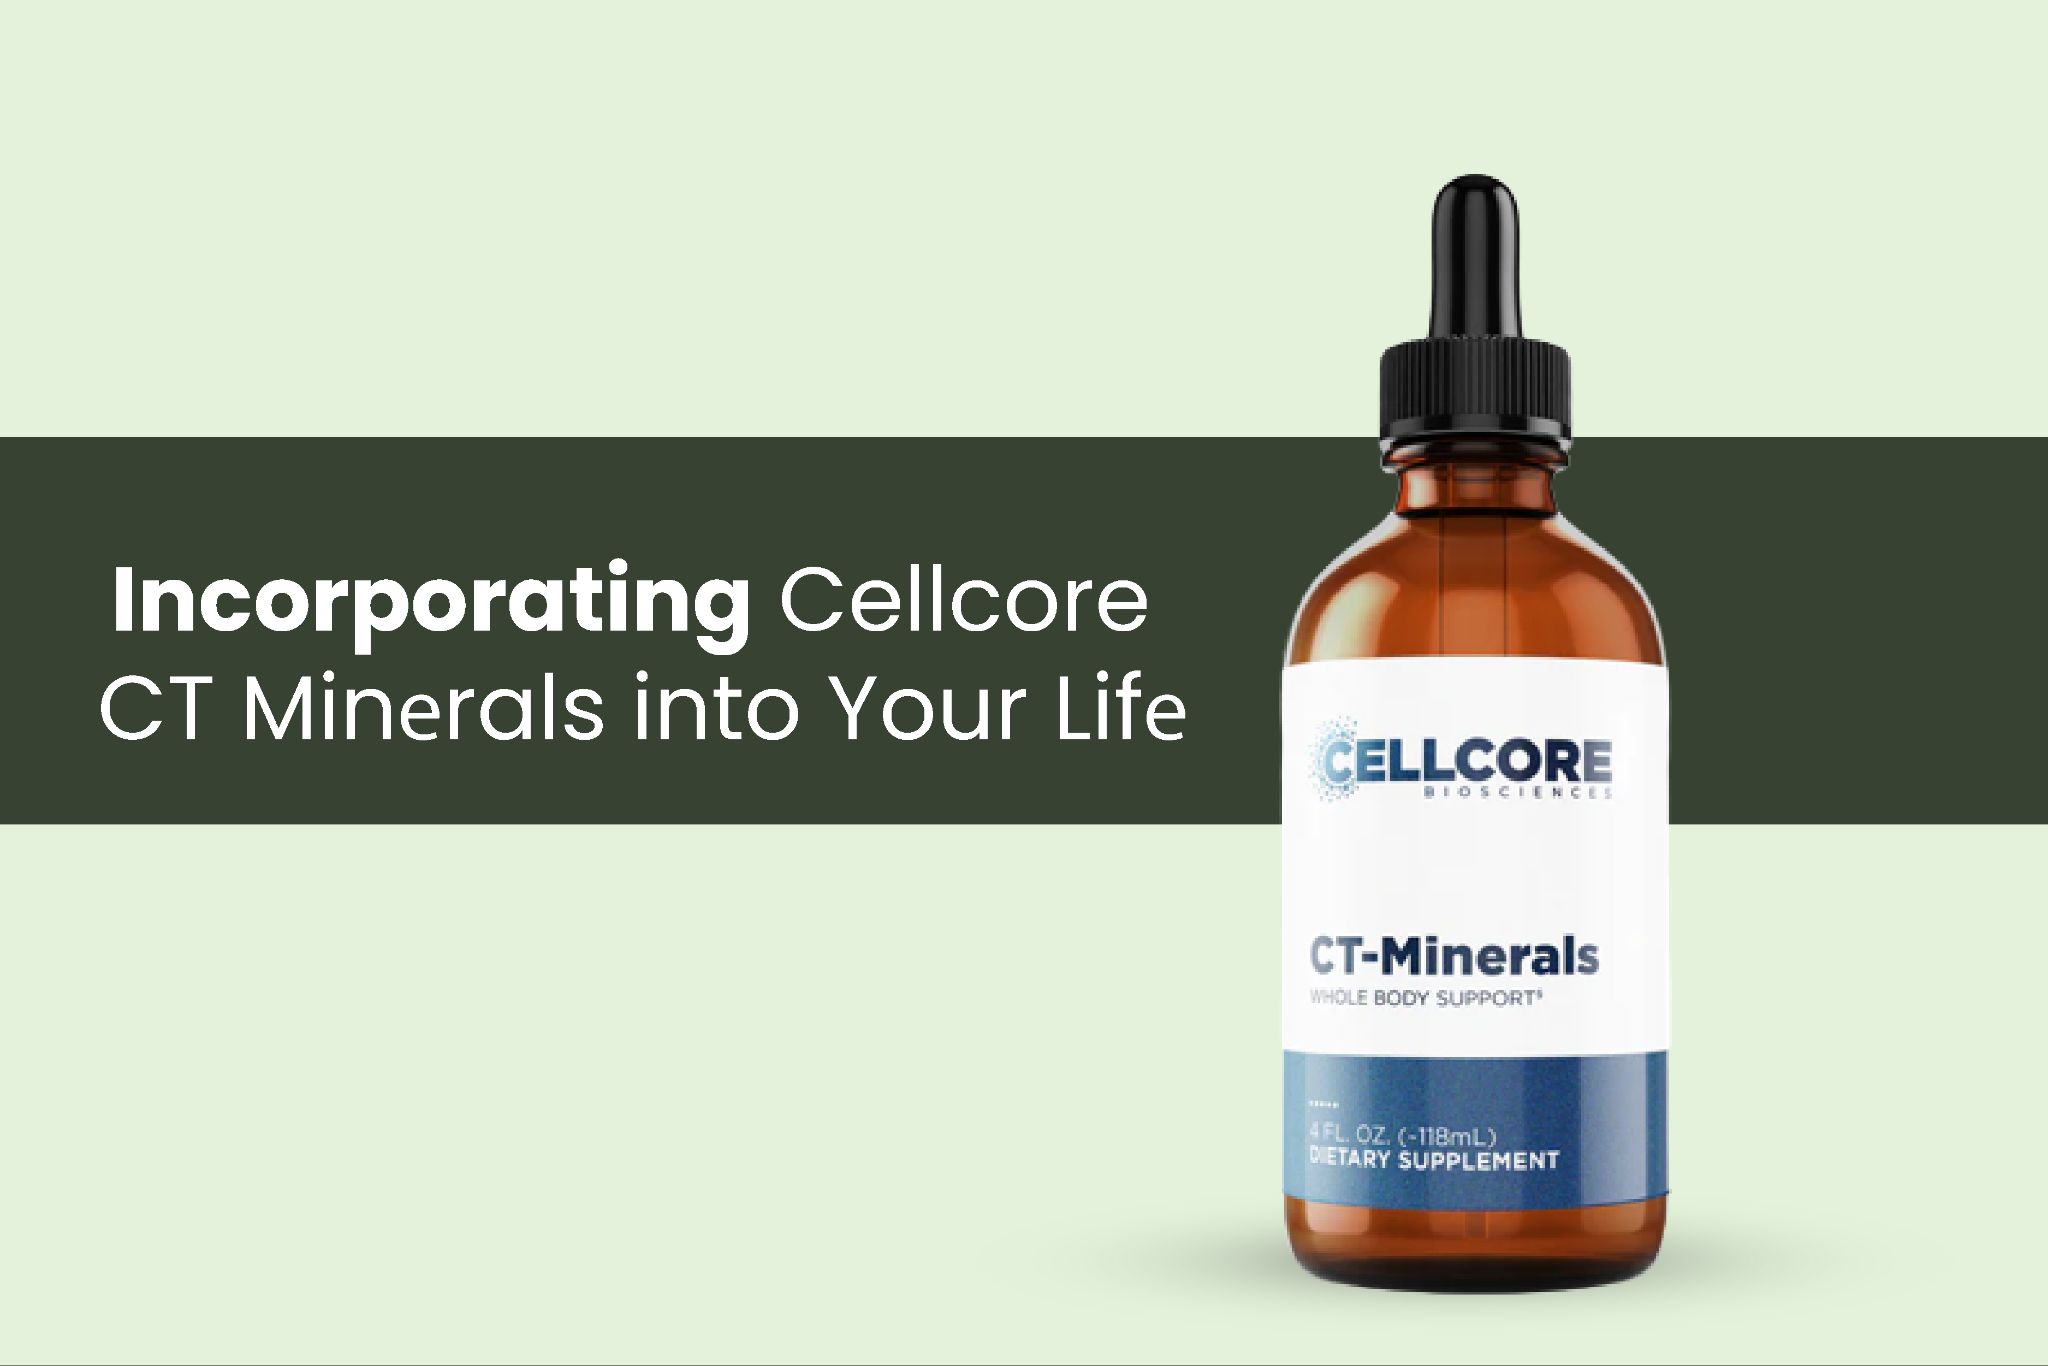 cellcore ct minerals